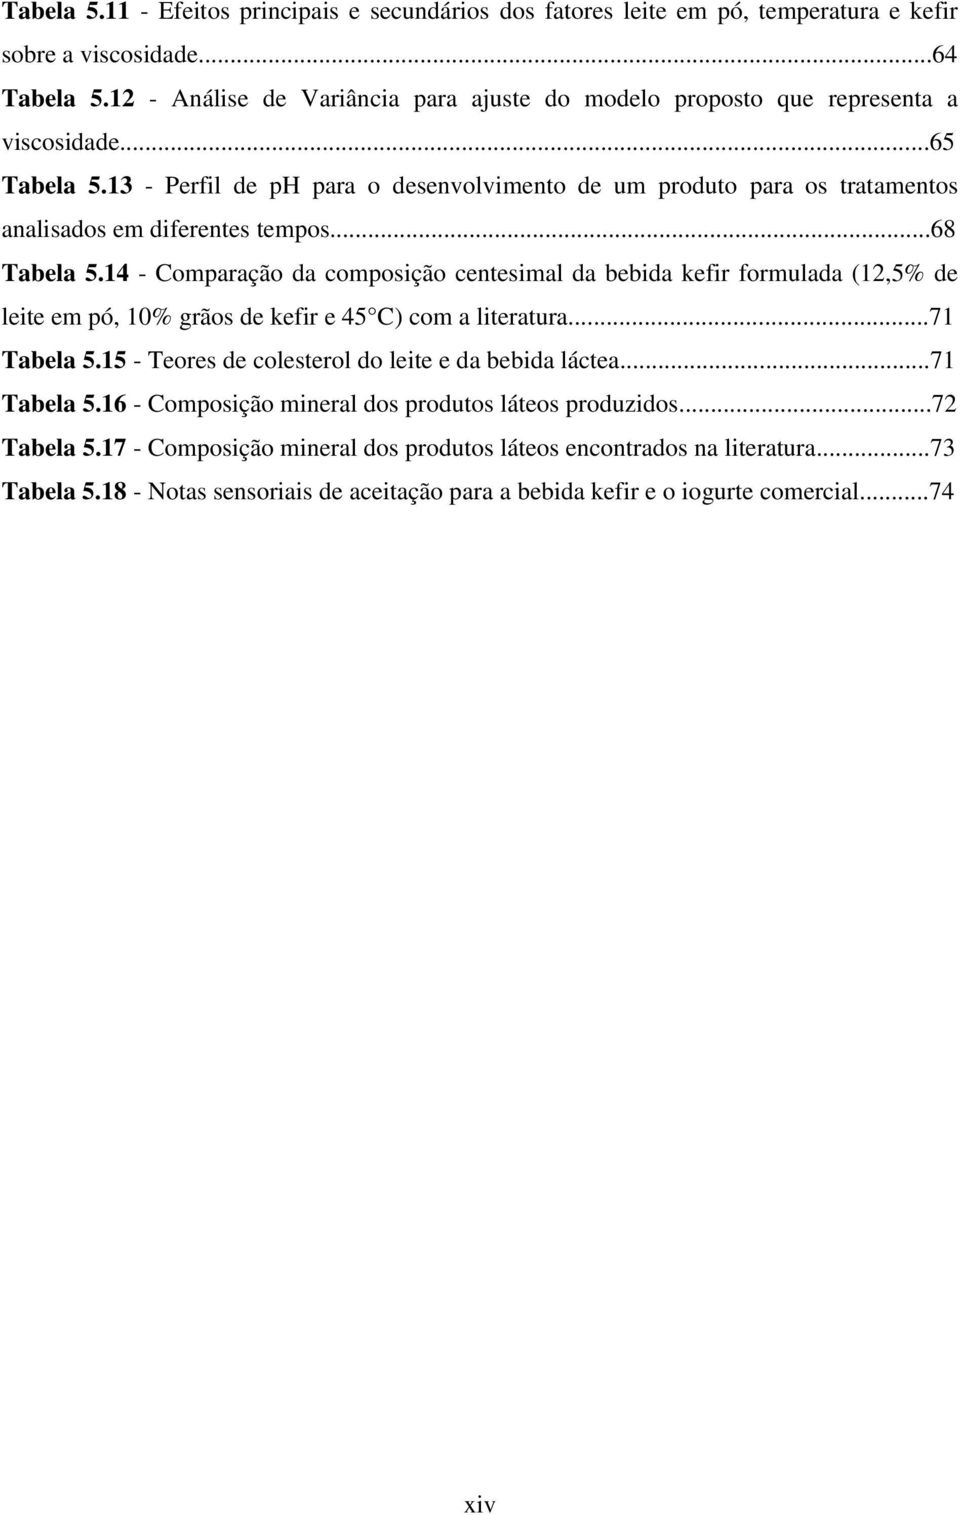 13 - Perfil de ph para o desenvolvimento de um produto para os tratamentos analisados em diferentes tempos...68 Tabela 5.